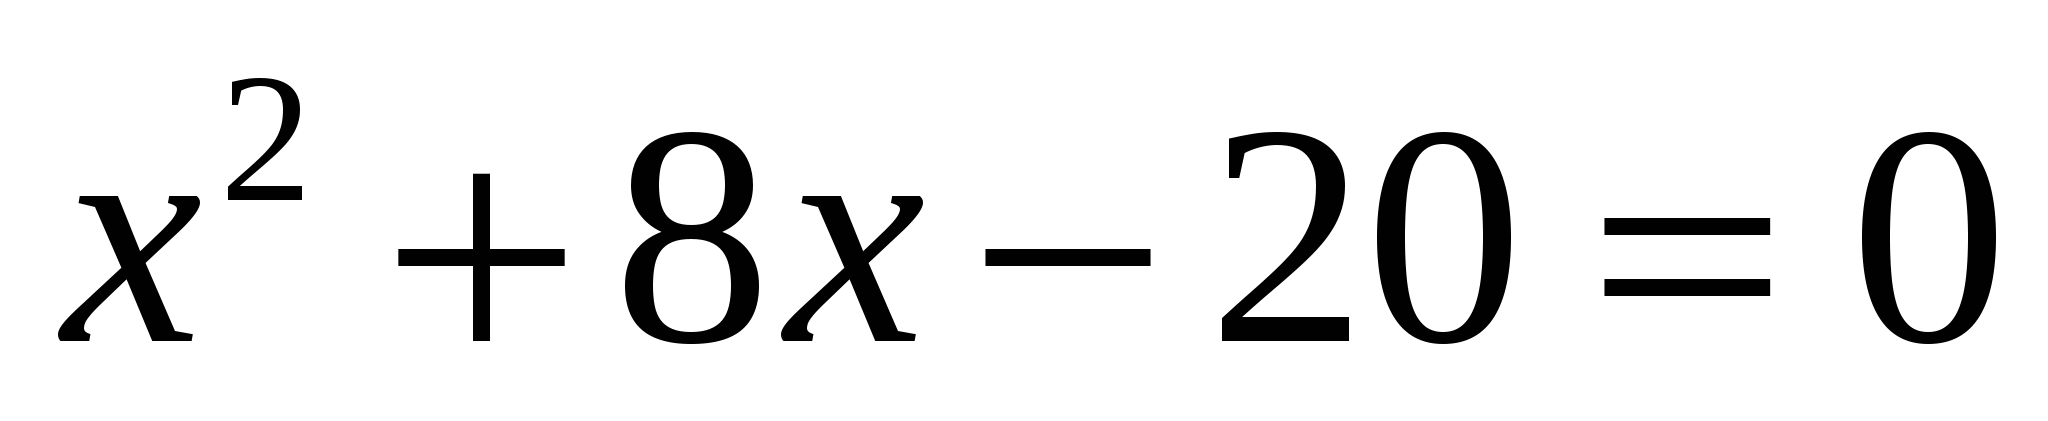 Методическая разработка открытого урока математики на тему: Решение показательных уравнений